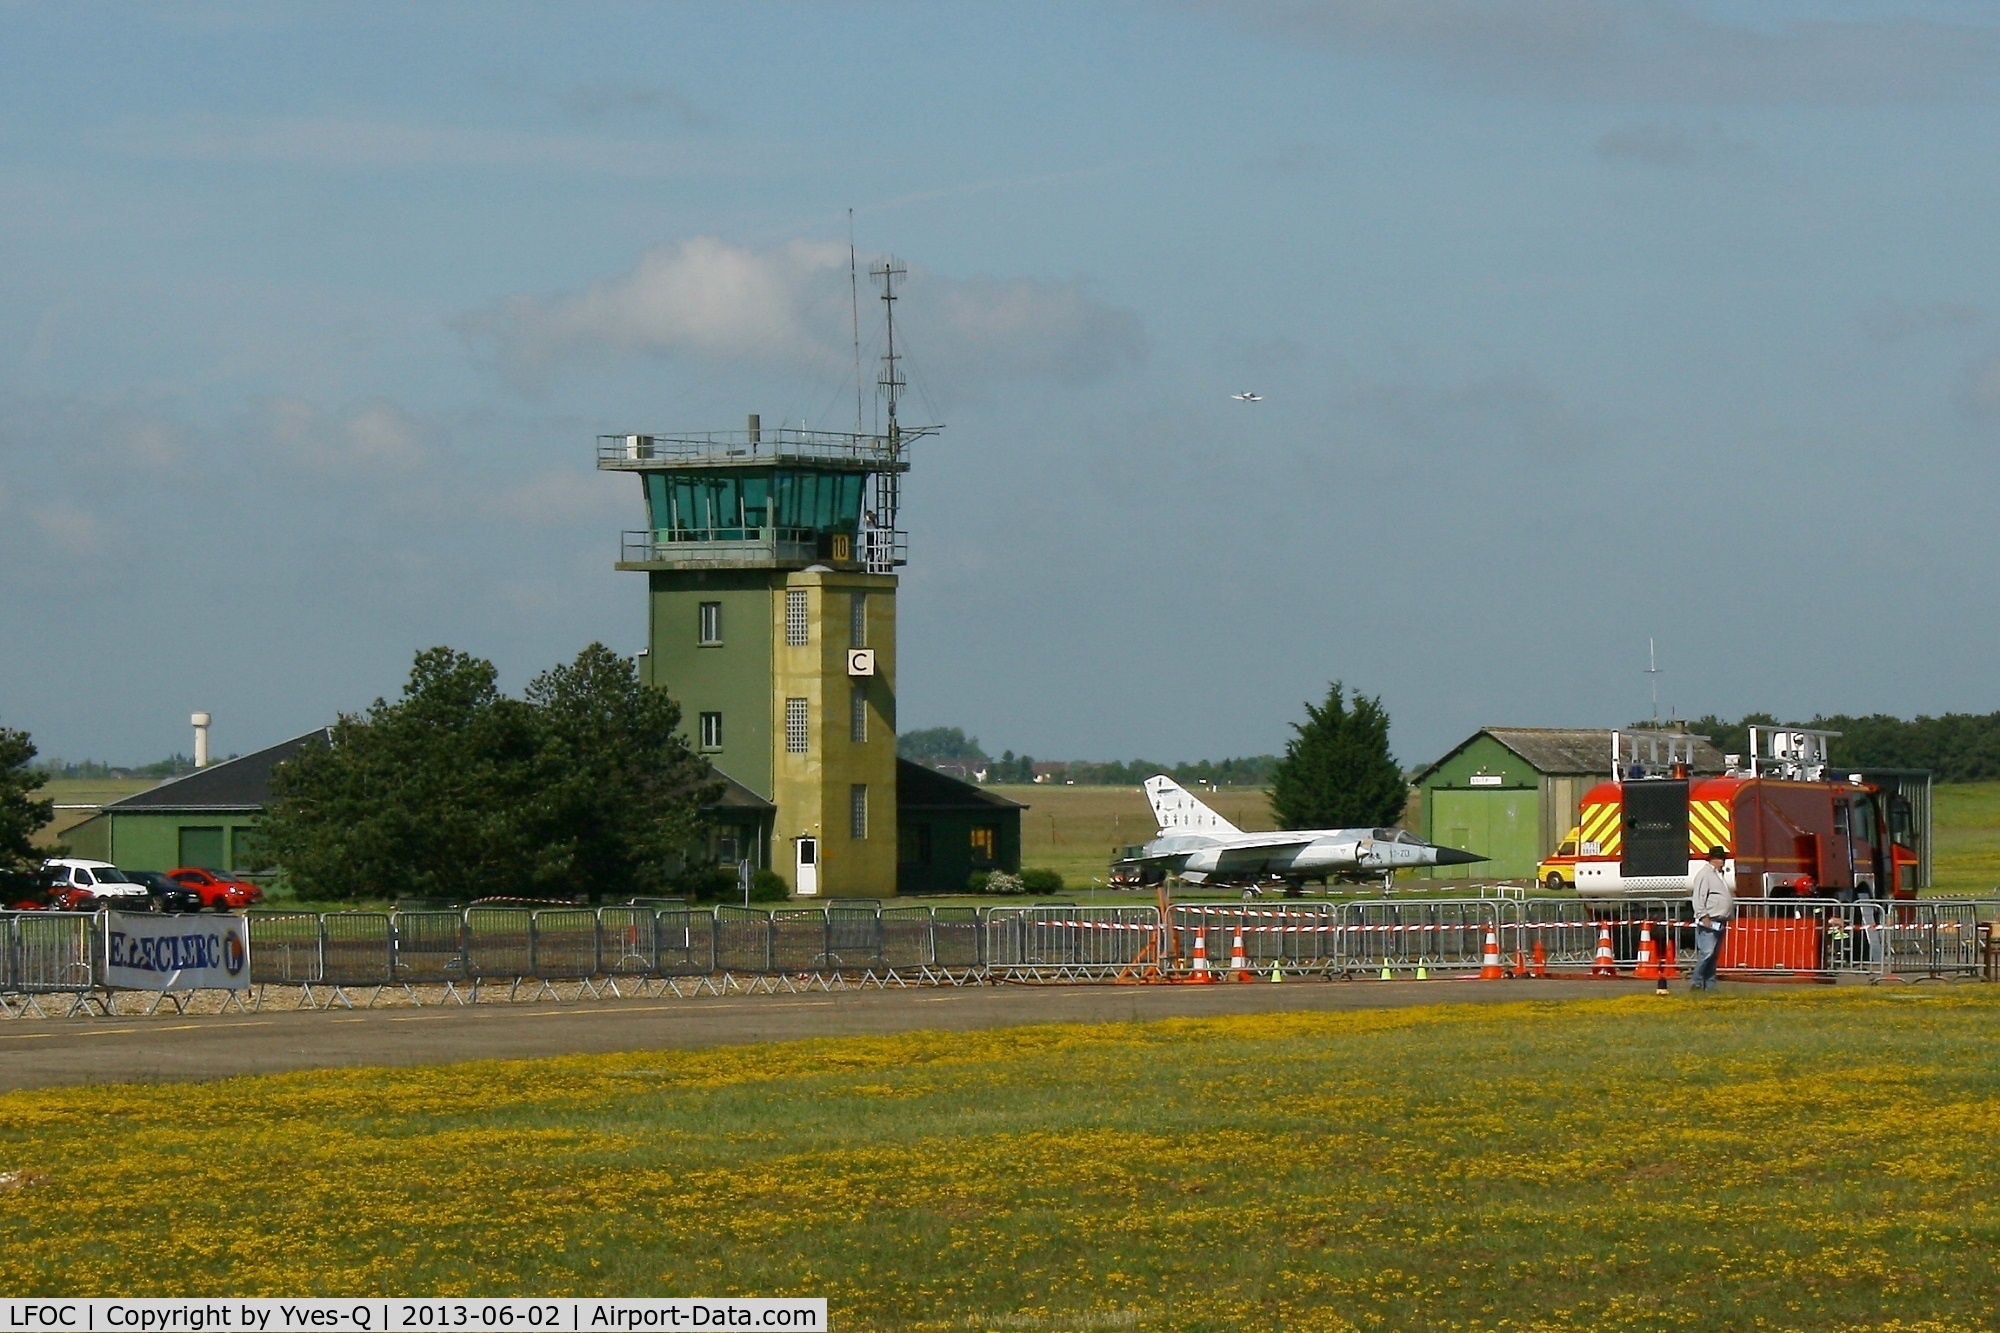 Châteaudun Airport, Châteaudun France (LFOC) - Control Tower, Châteaudun  Air Base 279 (LFOC)